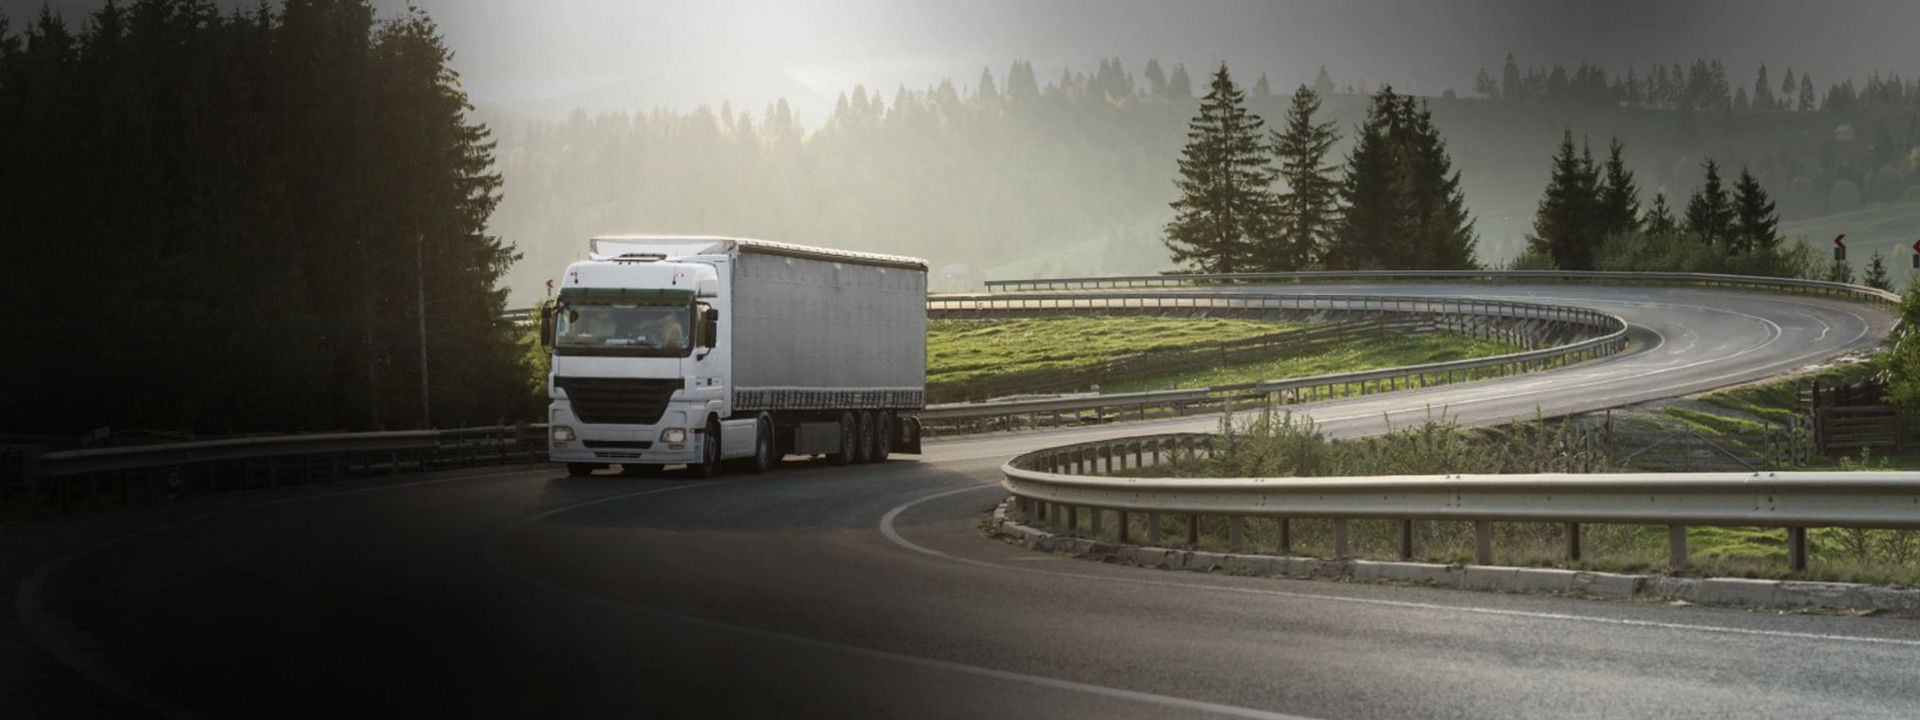 Această imagine arată un camion lung care circulă pe un drum regional cu anvelope versatile pentru camioane Bridgestone.